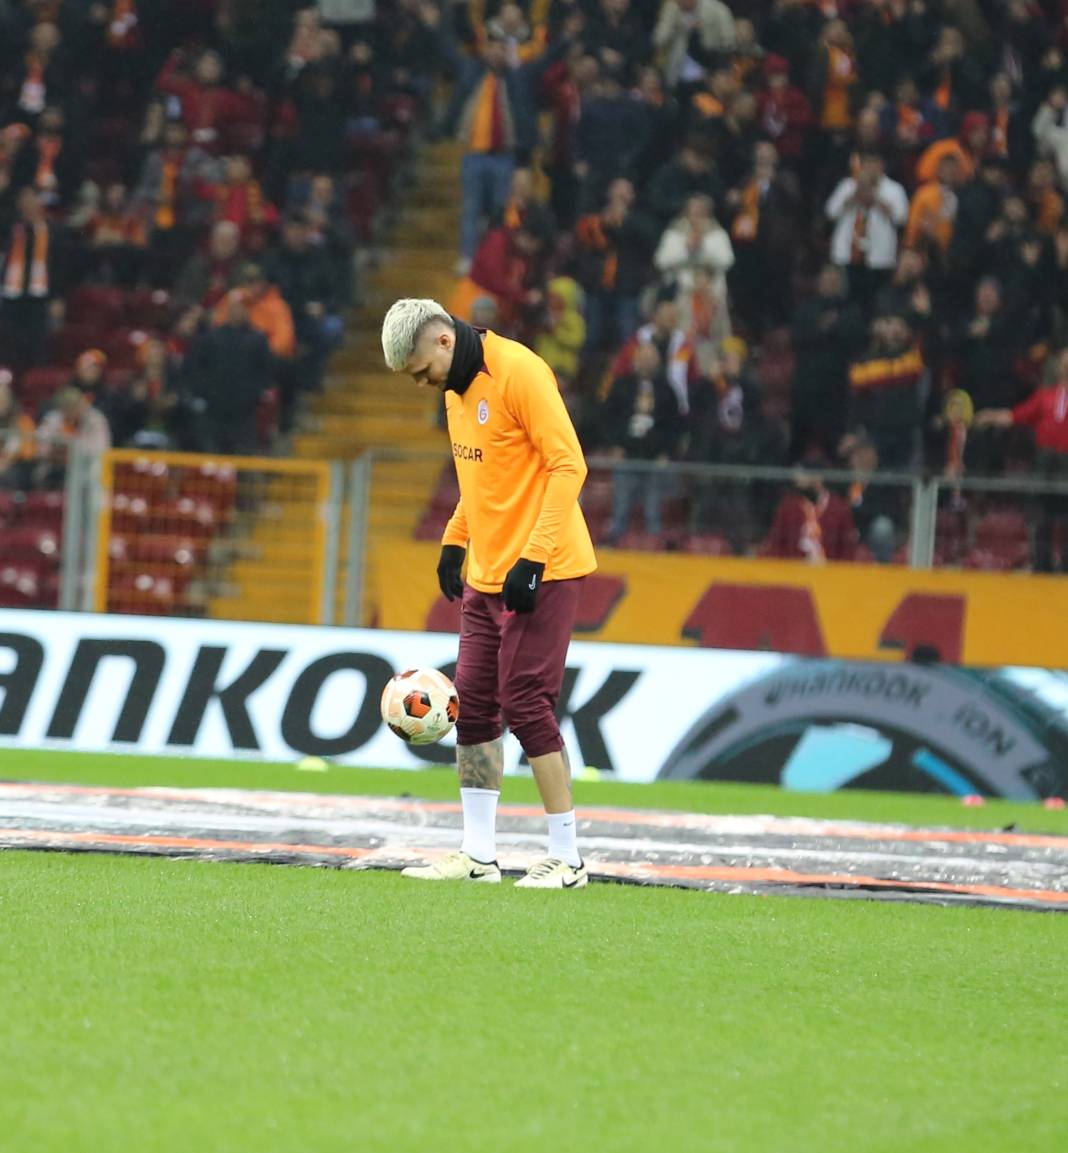 Muslera devleşti Icardi fişi çekti. Galatasaray taraftarı öldü öldü dirildi 40